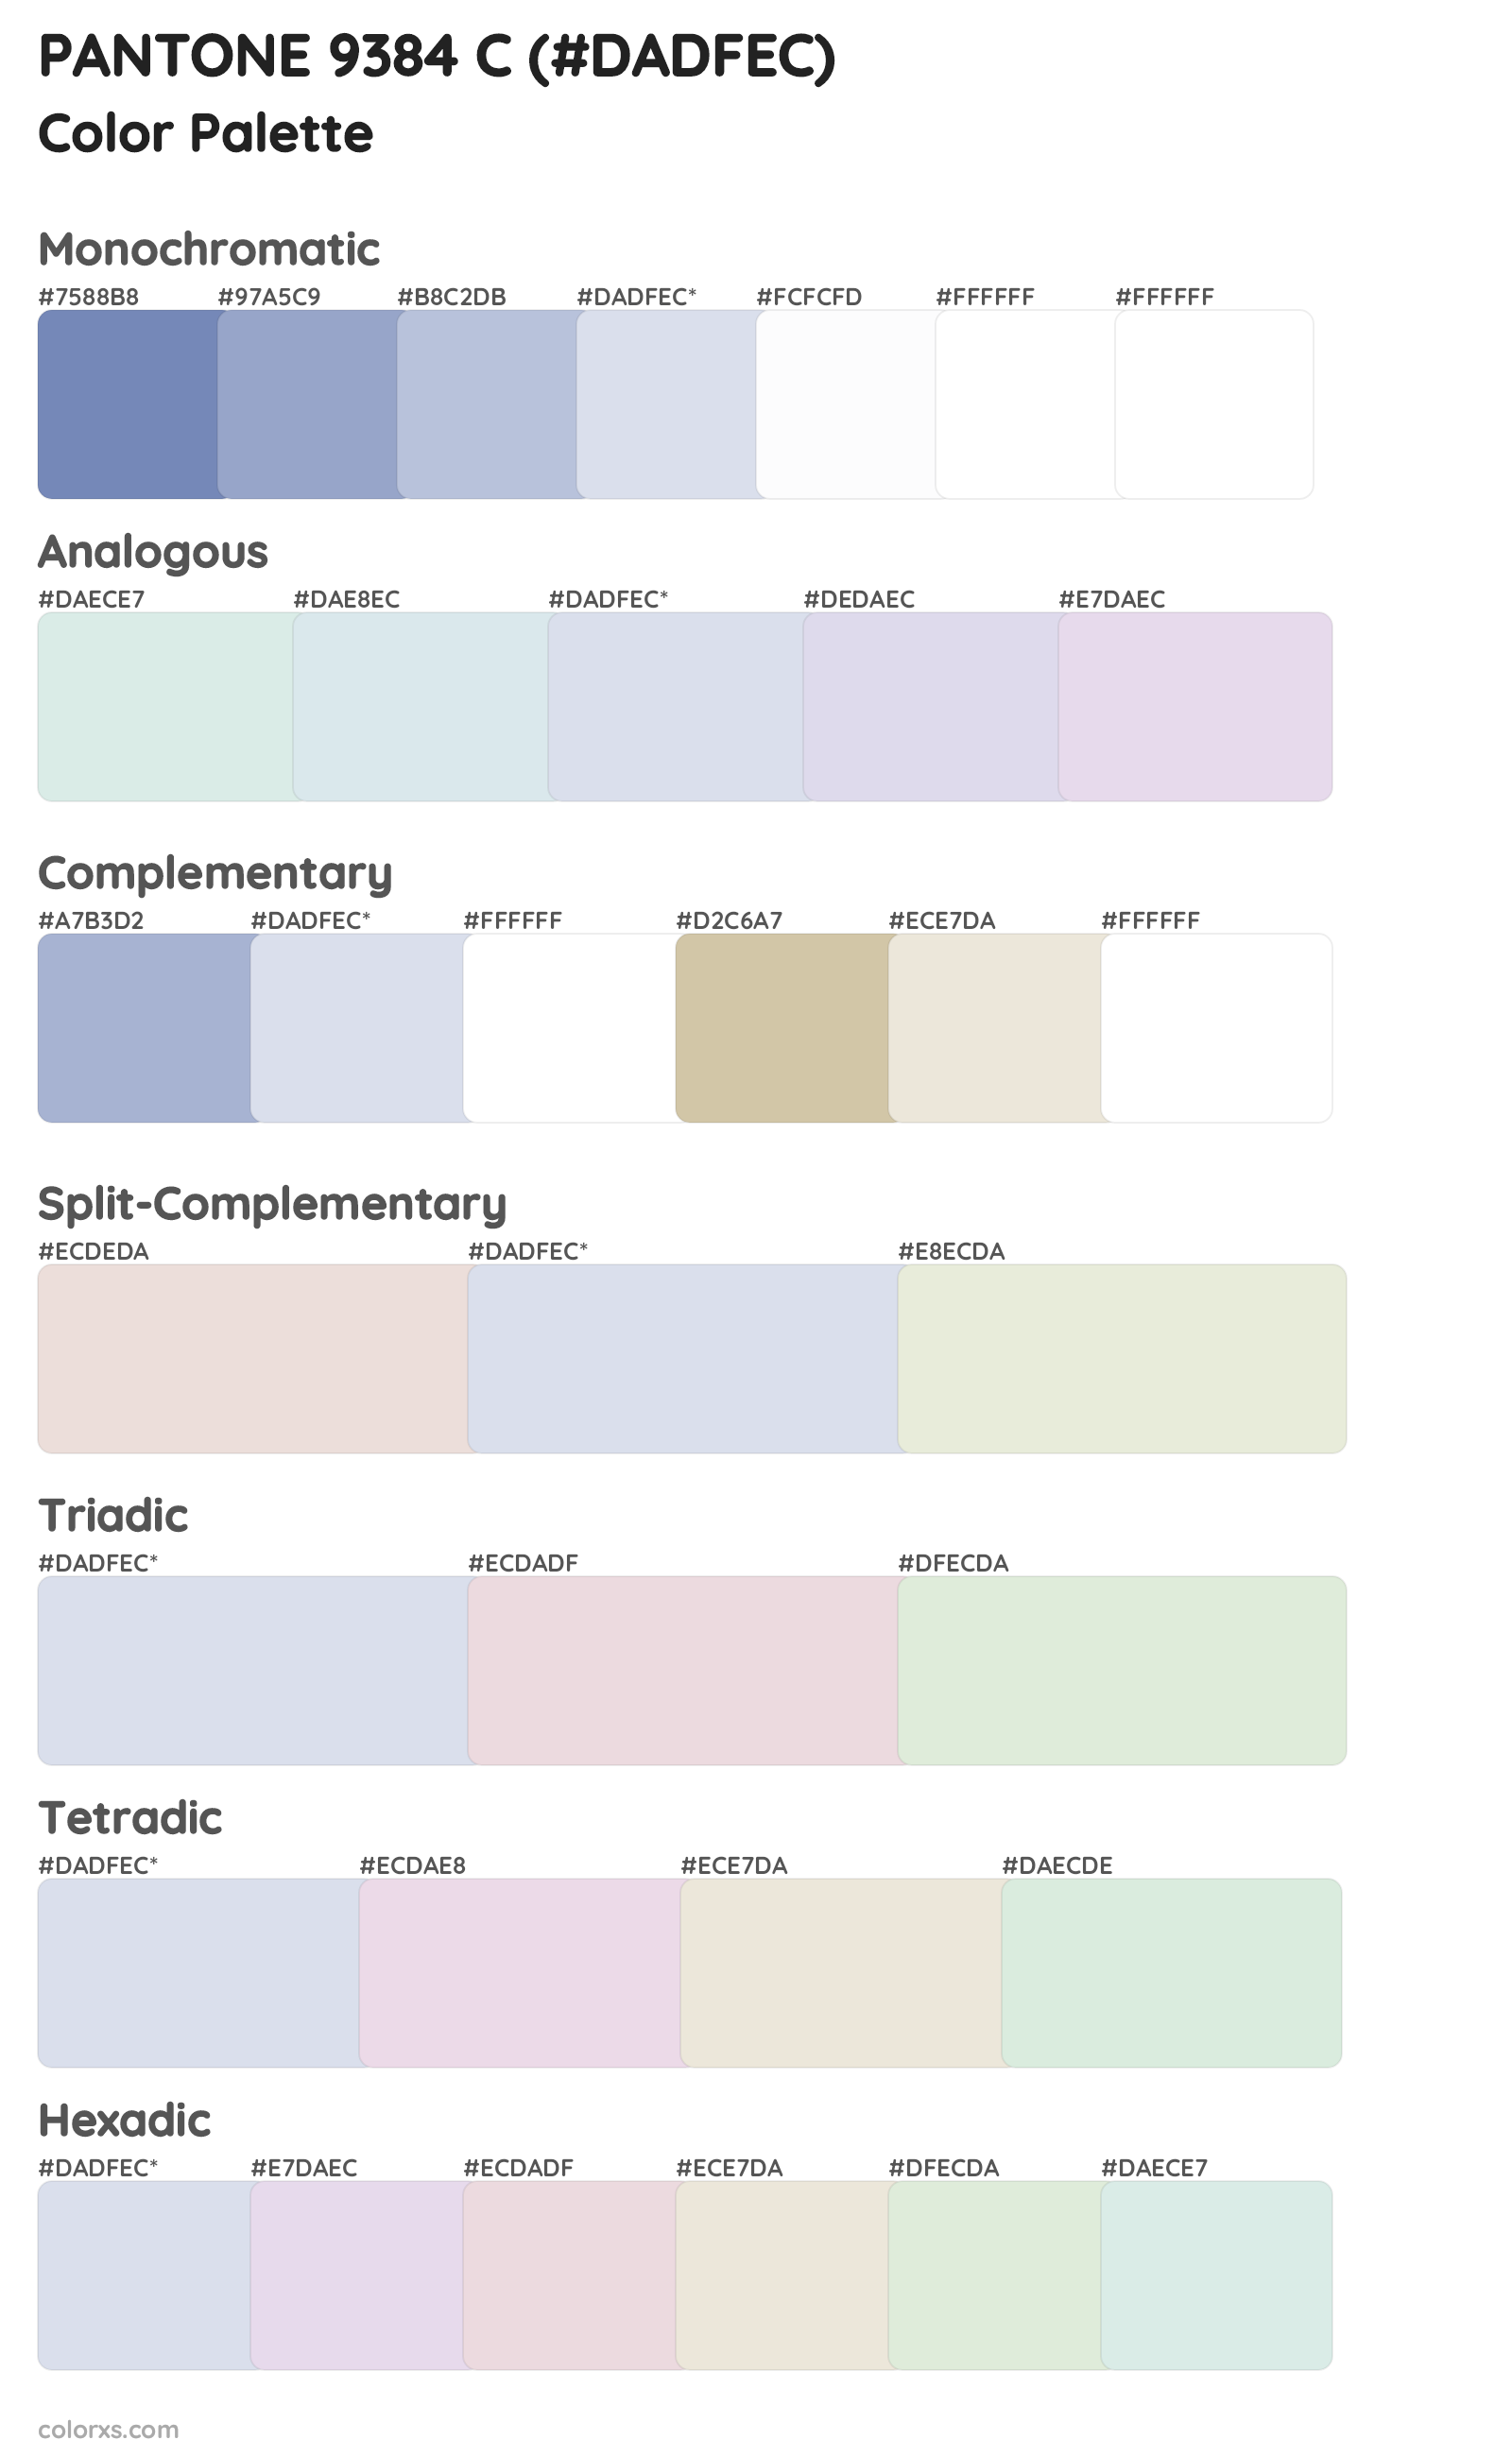 PANTONE 9384 C Color Scheme Palettes